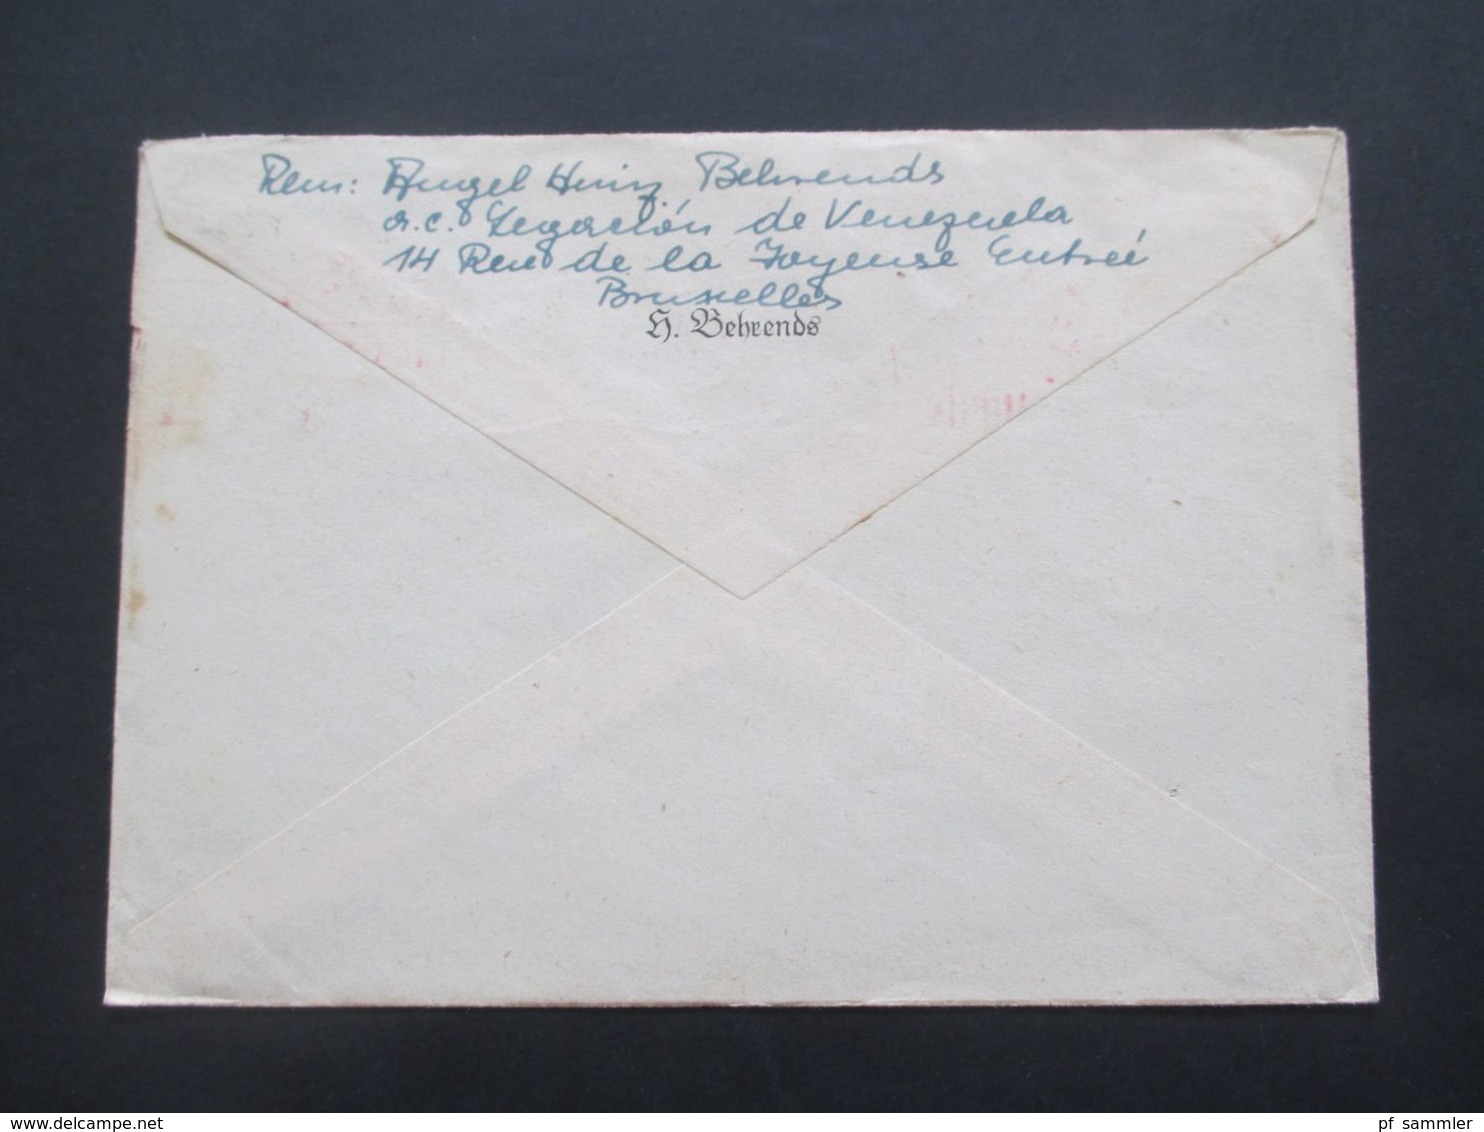 Belgien 1947 Belege Mit Zensurstempel US Civil Censorship Munich Nach Berchtesgaden Im Postamt Amerikanische Zone - Briefe U. Dokumente